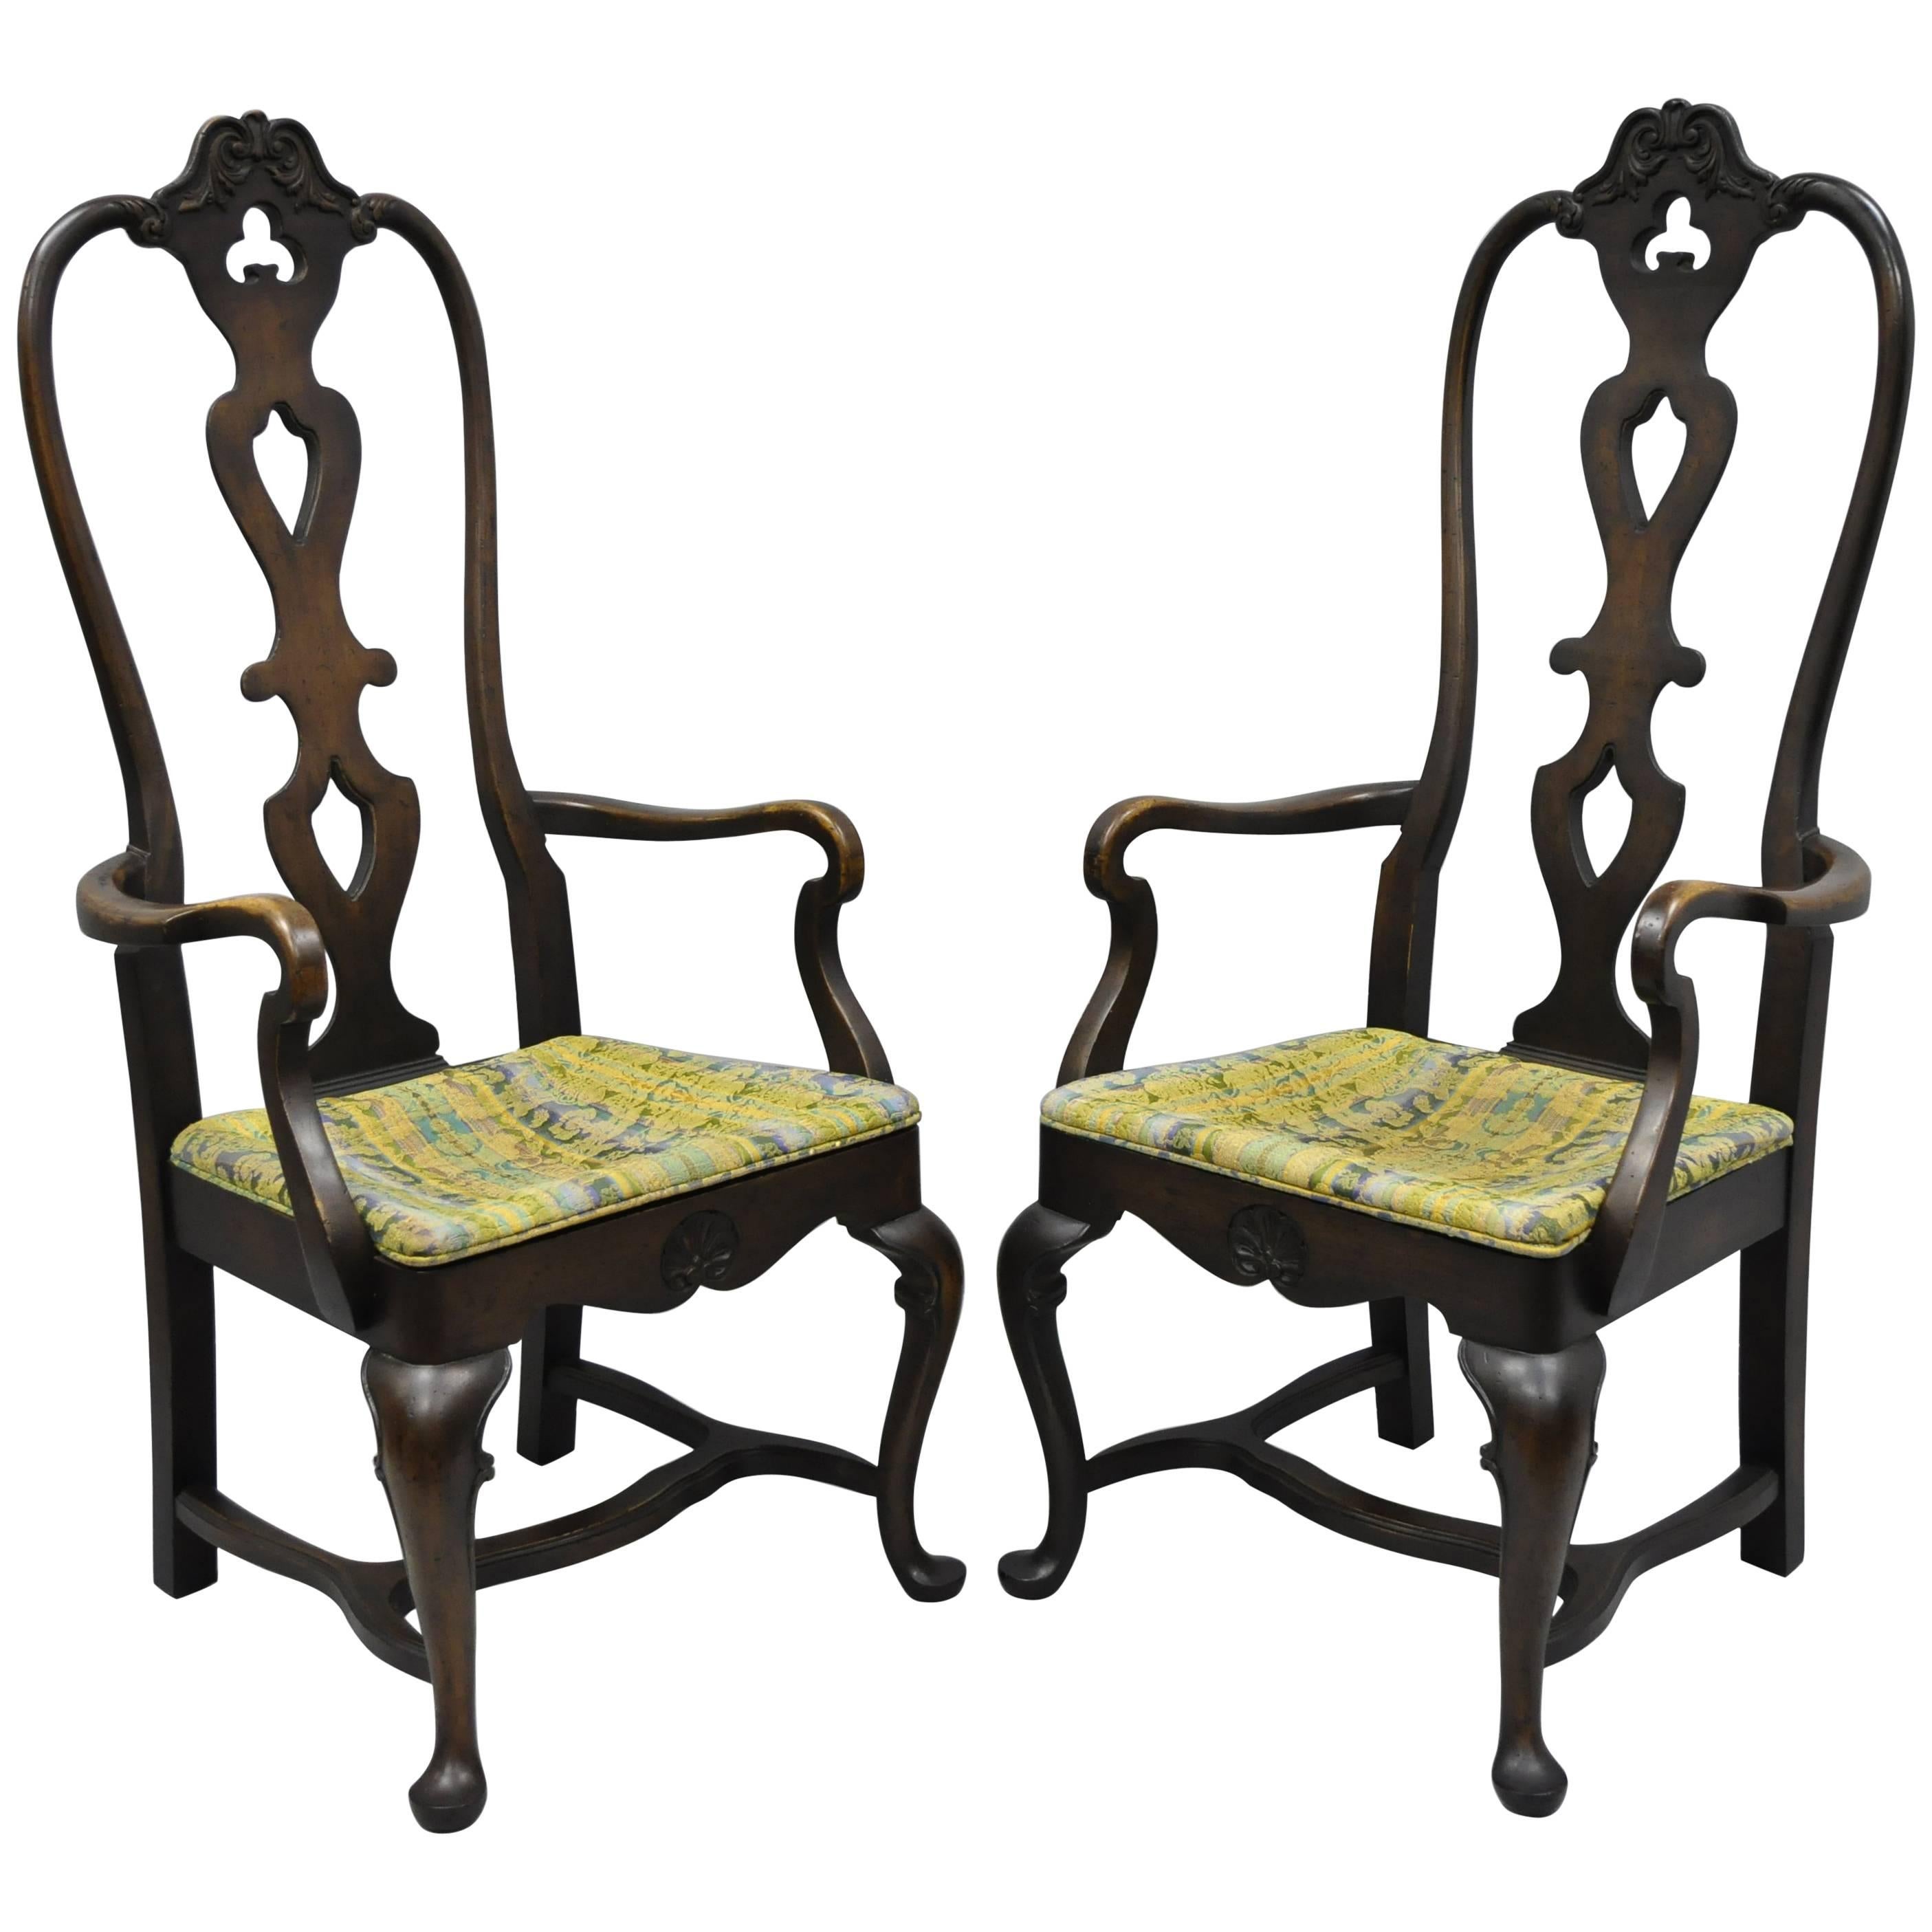 Esszimmerstühle mit hoher Rückenlehne im italienischen Barock- oder schwedischen Rokoko-Stil, ein Paar